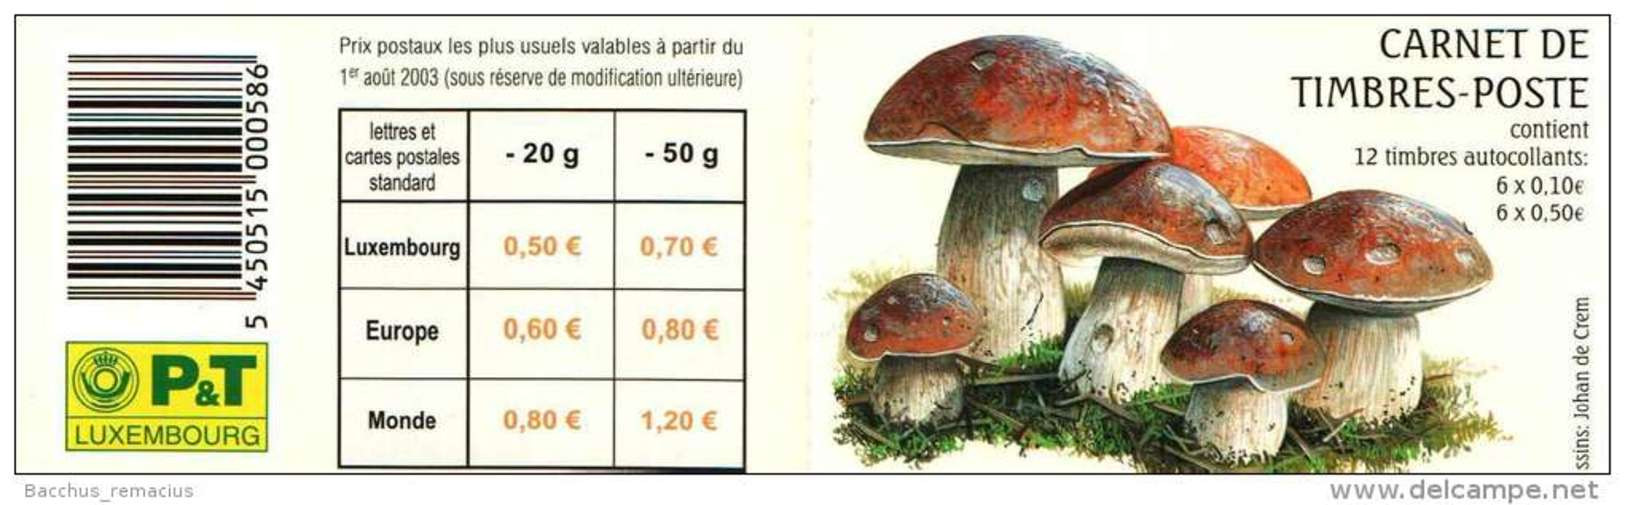 Luxembourg Carnet De Timbres-Poste Autocollants (6x0,50 Et 6x0,10 Euro) Champignons Pilze Mushrooms 2004 - Booklets